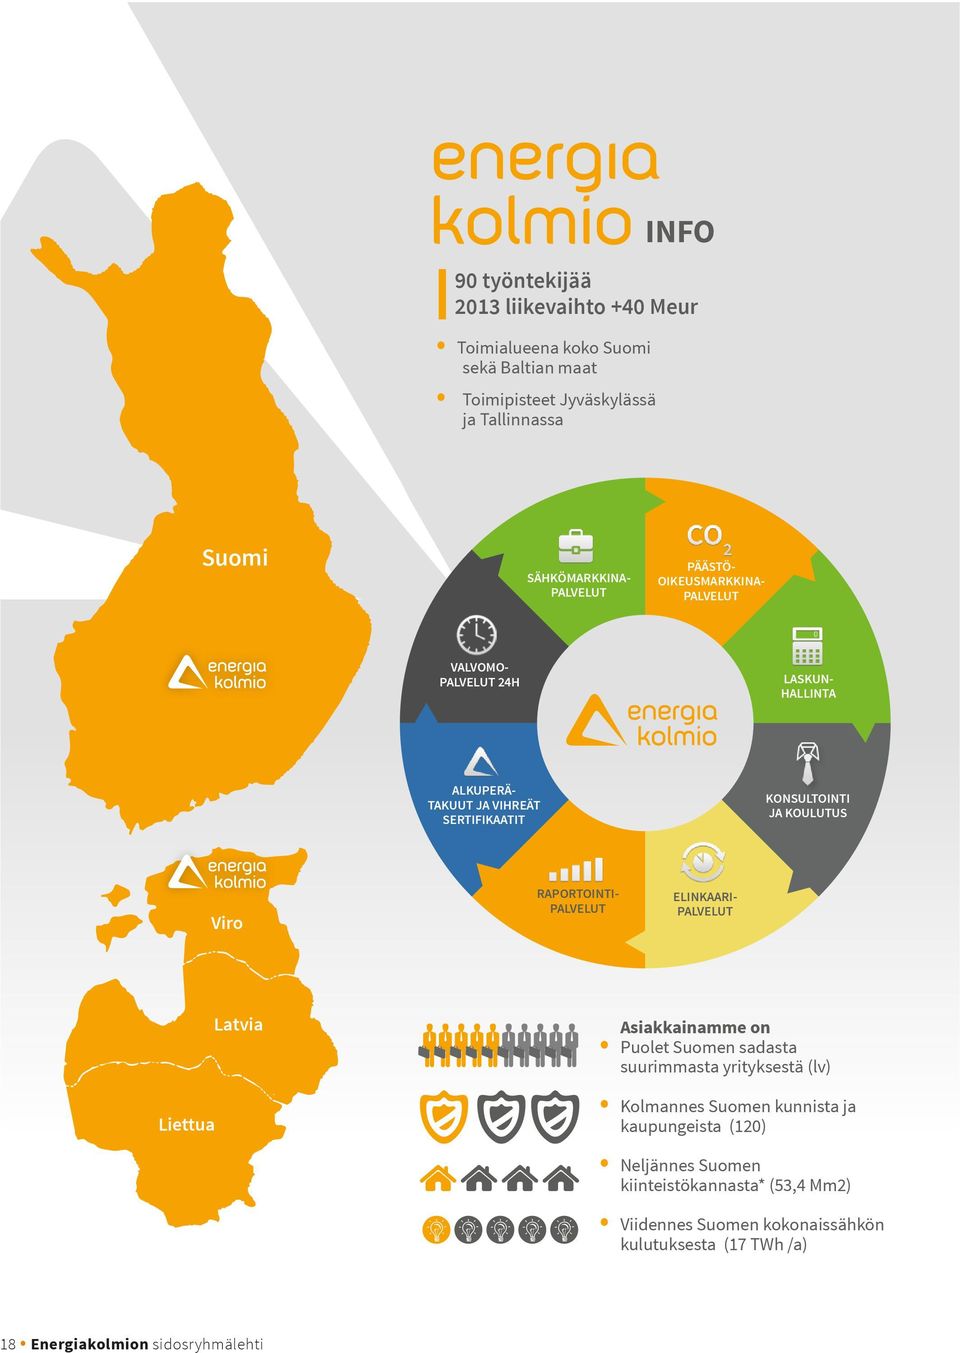 RAPORTOINTI- PALVELUT ELINKAARI- PALVELUT Liettua Latvia Asiakkainamme on Puolet Suomen sadasta suurimmasta yrityksestä (lv) Kolmannes Suomen kunnista ja